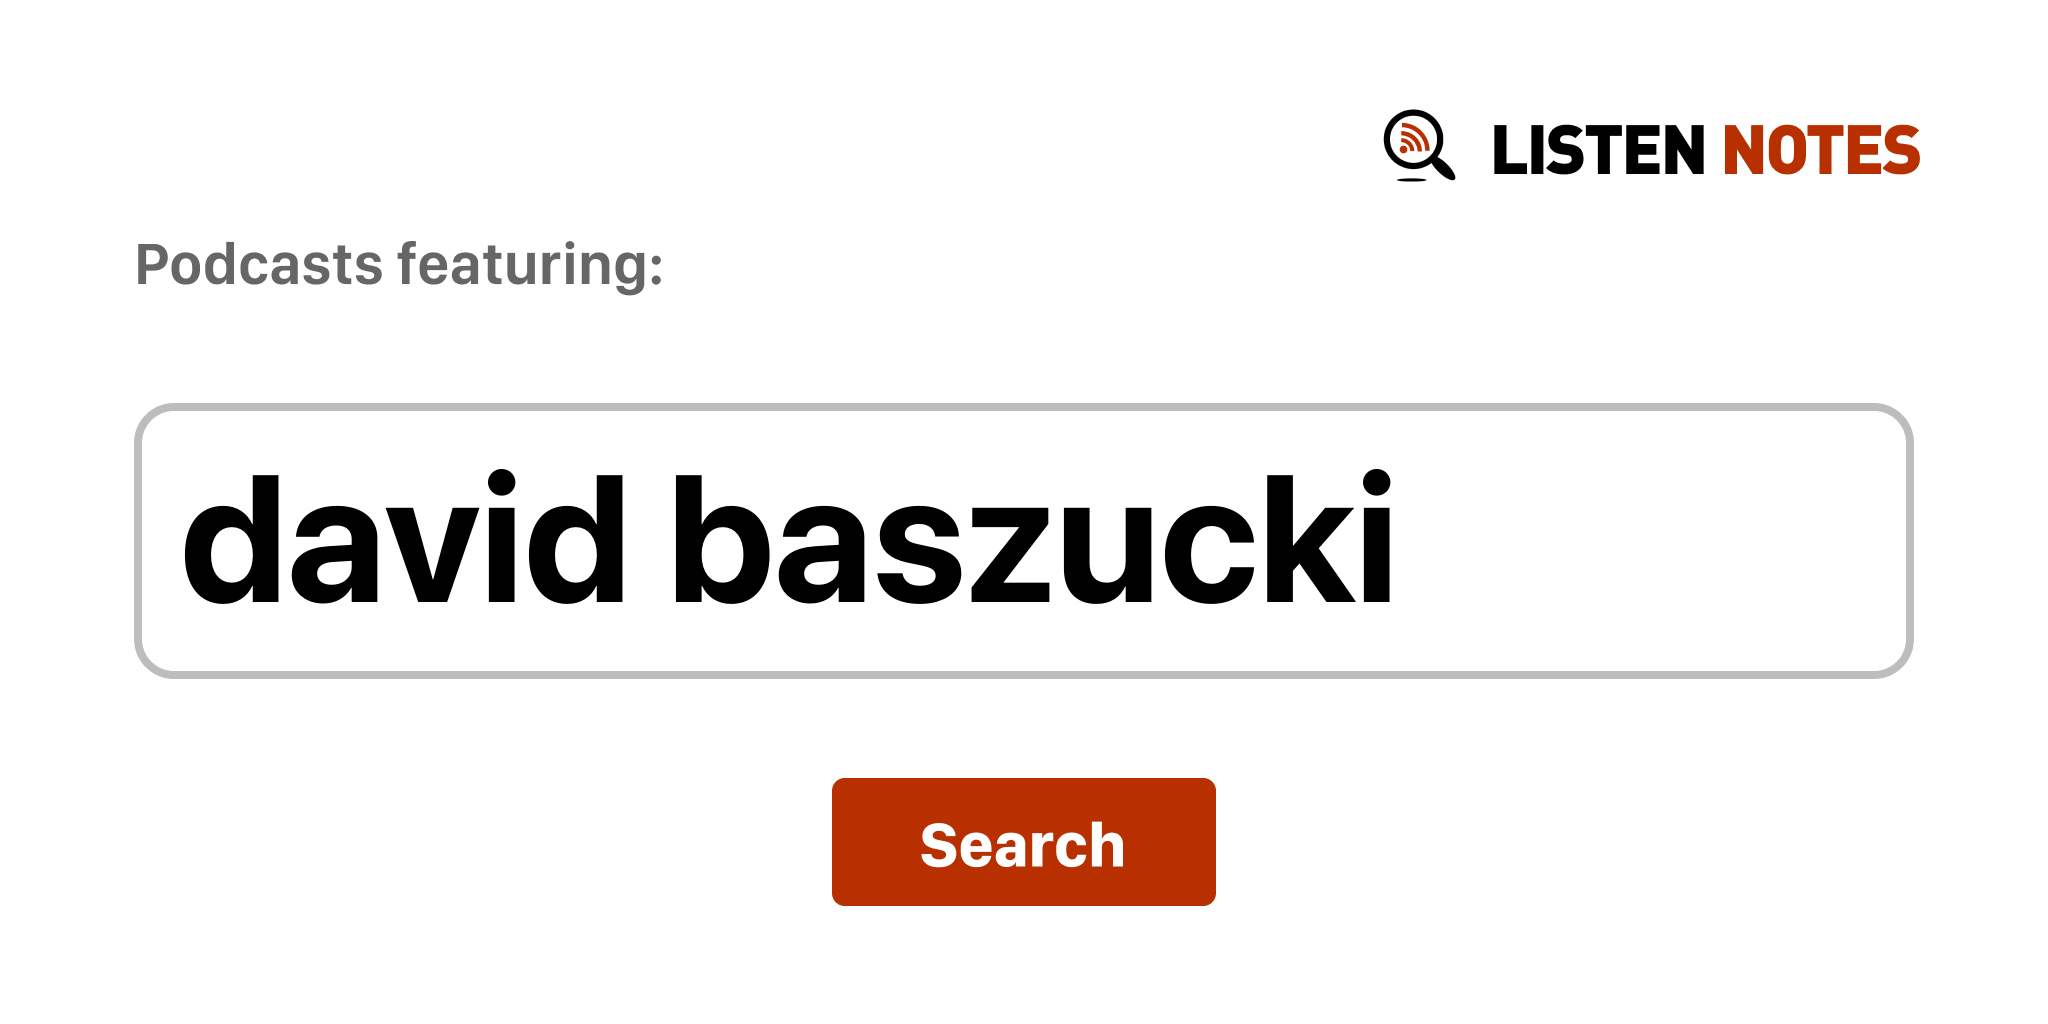 David Baszucki - Wikipedia